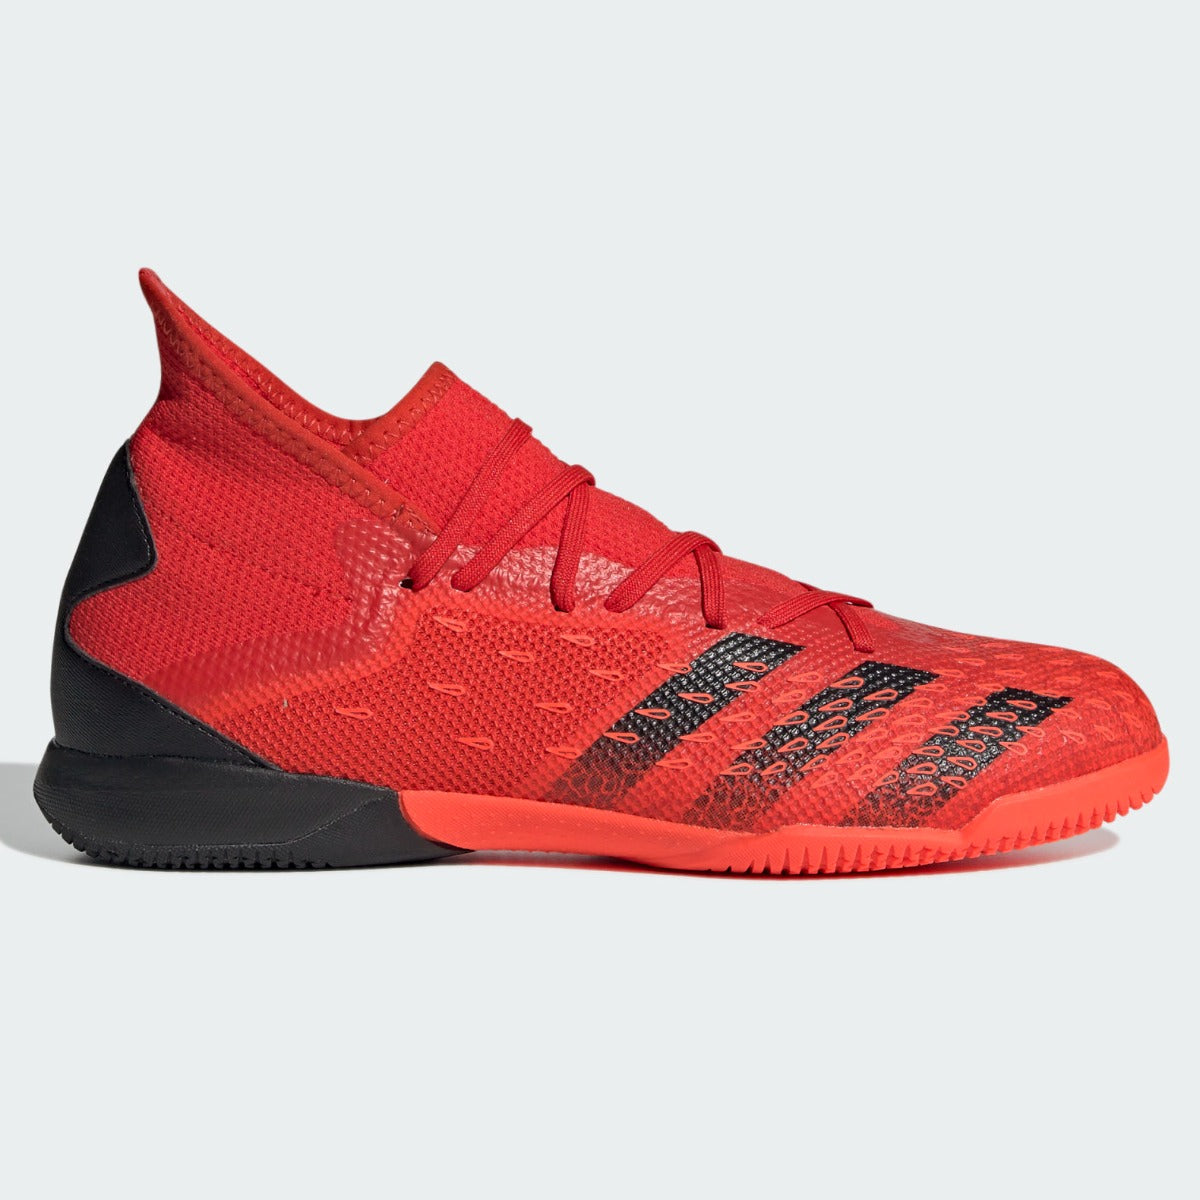 Adidas Predator Freak .3 IN - Red-Black (Side 1)